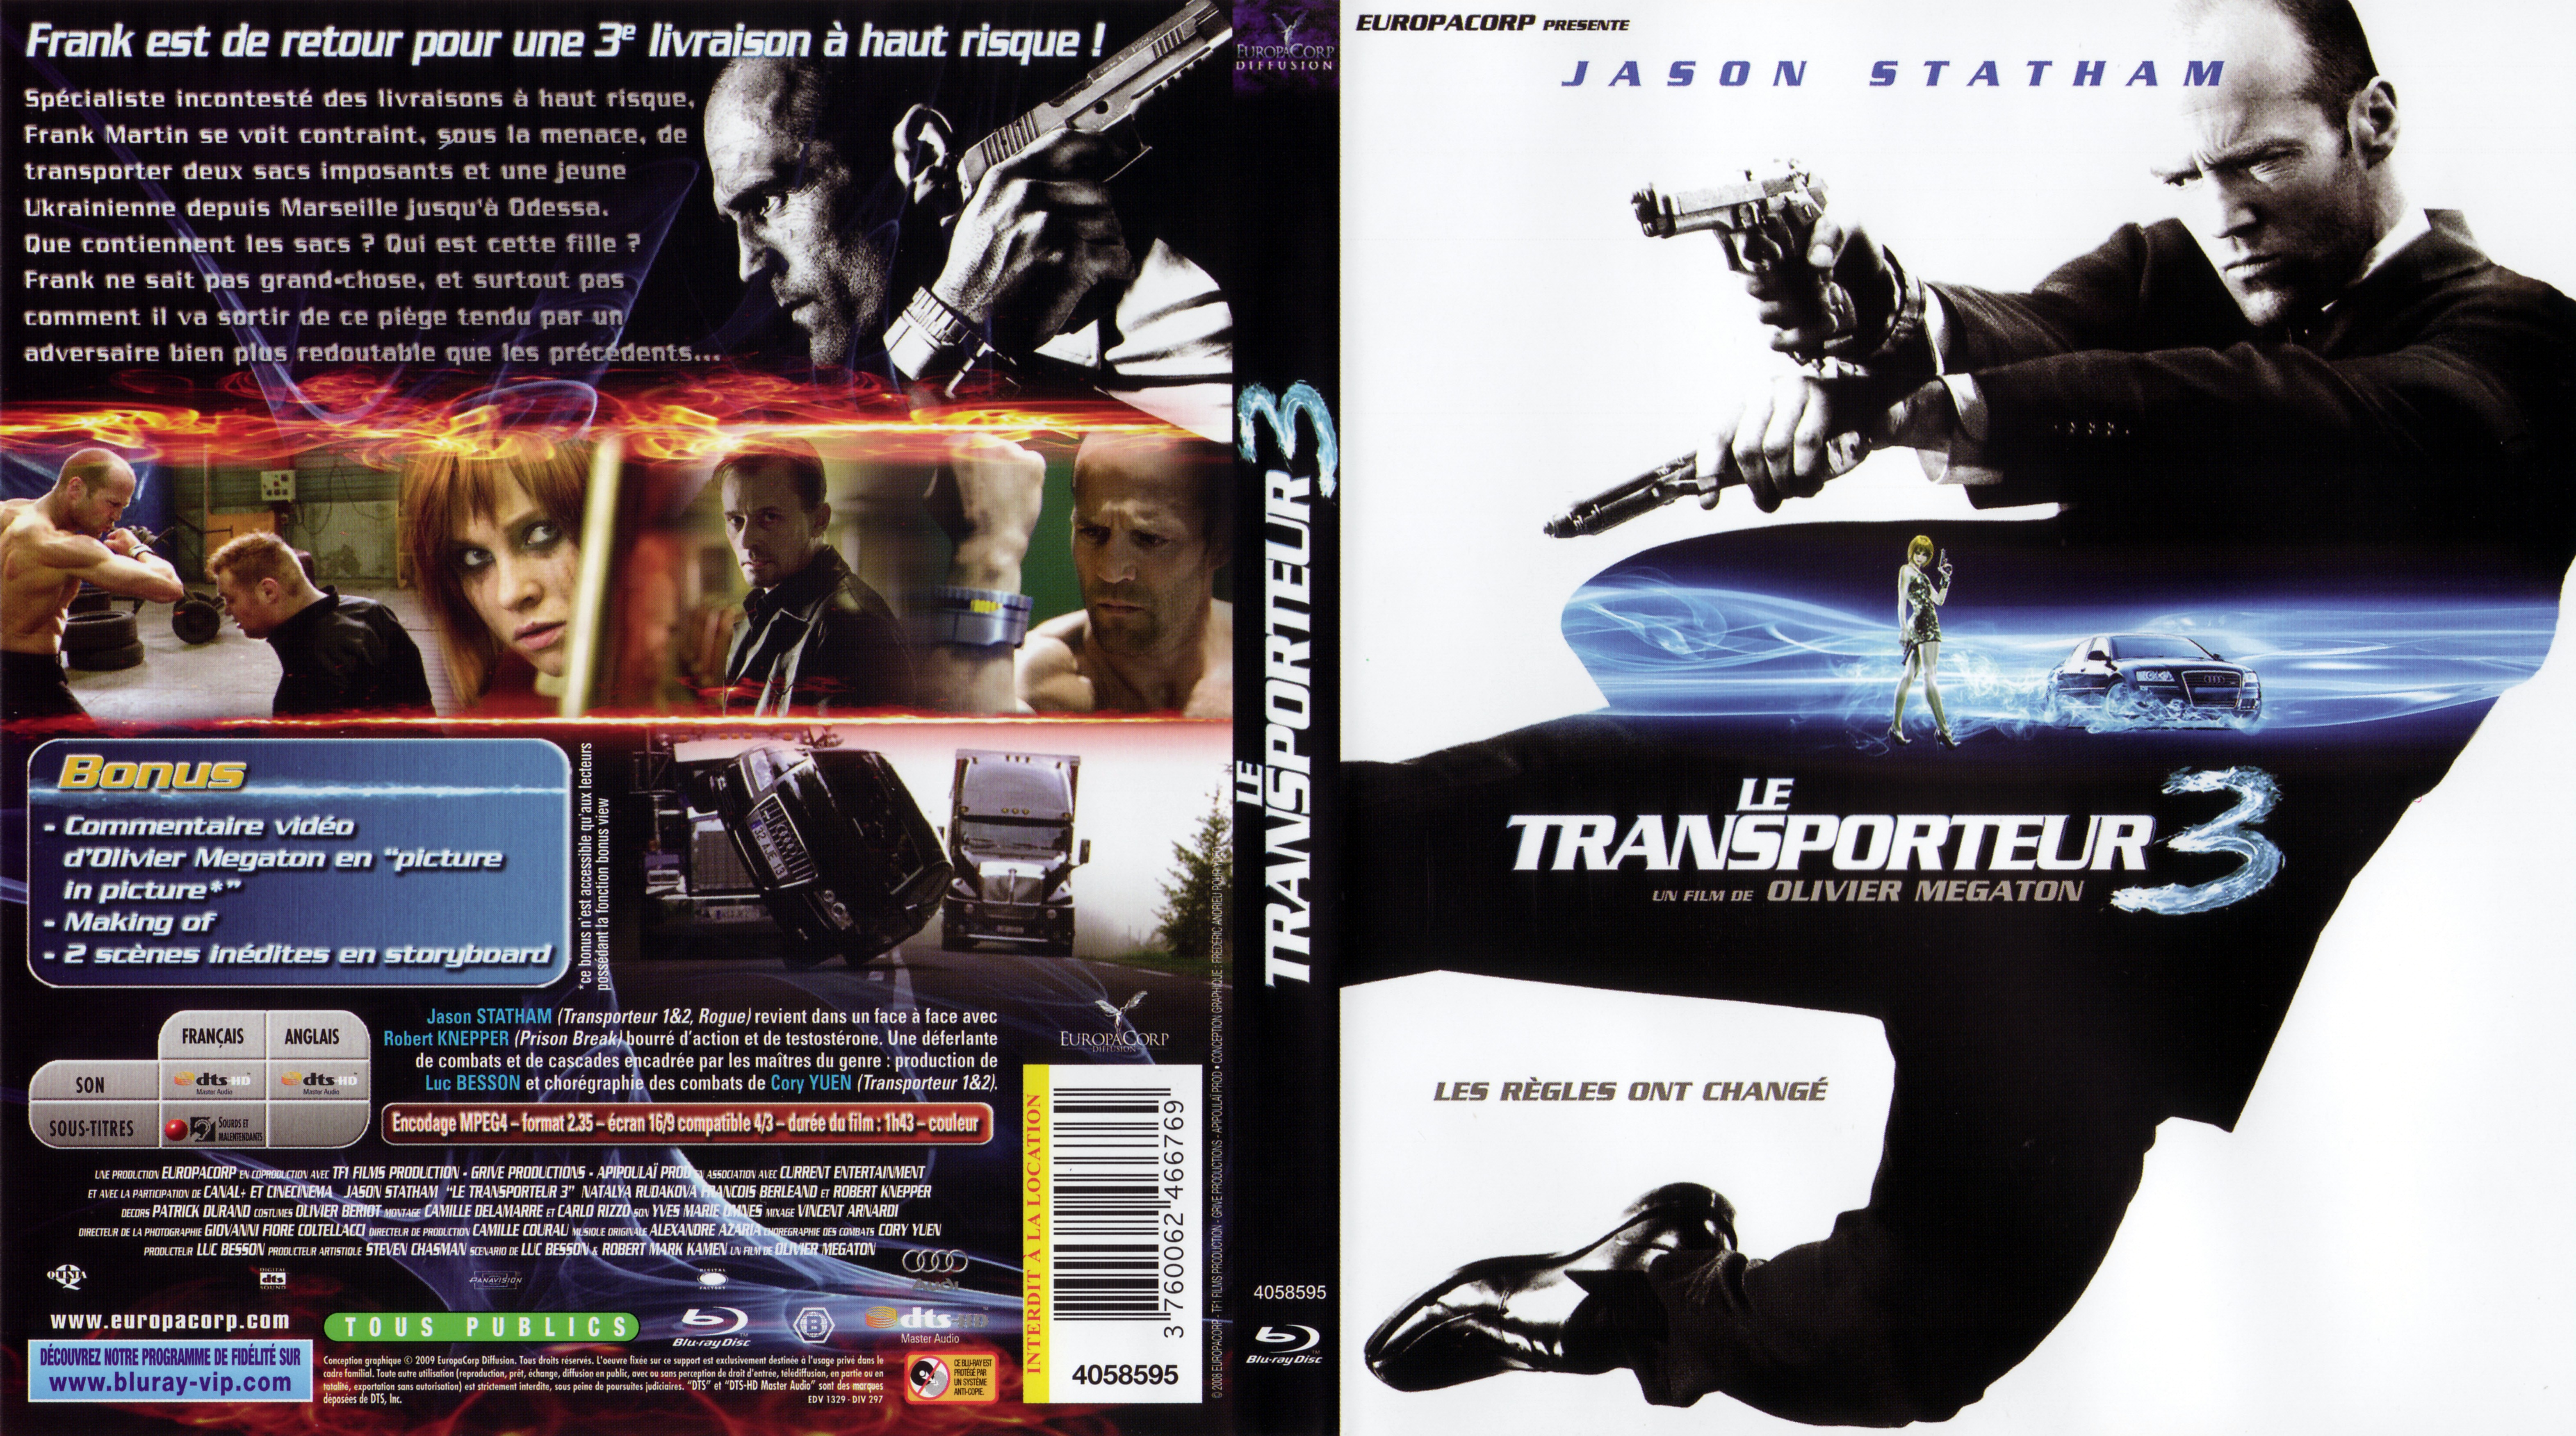 Jaquette DVD Le transporteur 3 (BLU-RAY)